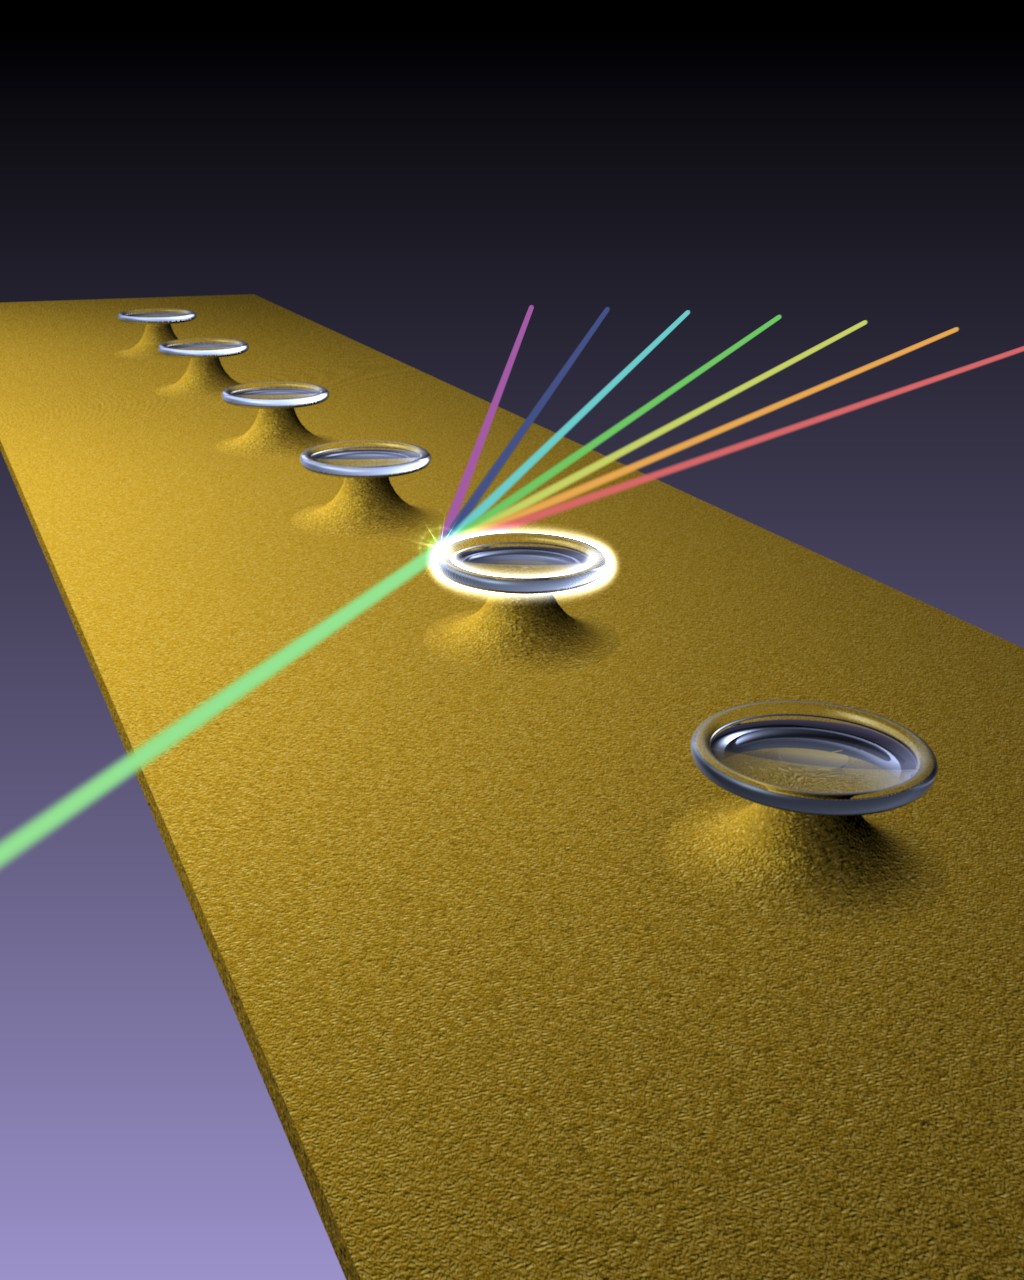 Mit dem Selektiven Laser-induzierten Ätzen lassen sich Mikroresonatoren herstellen, zum Beispiel für Frequenzkammgeneratoren. Das Laserverfahren ermöglicht dabei neue Geometrien. 